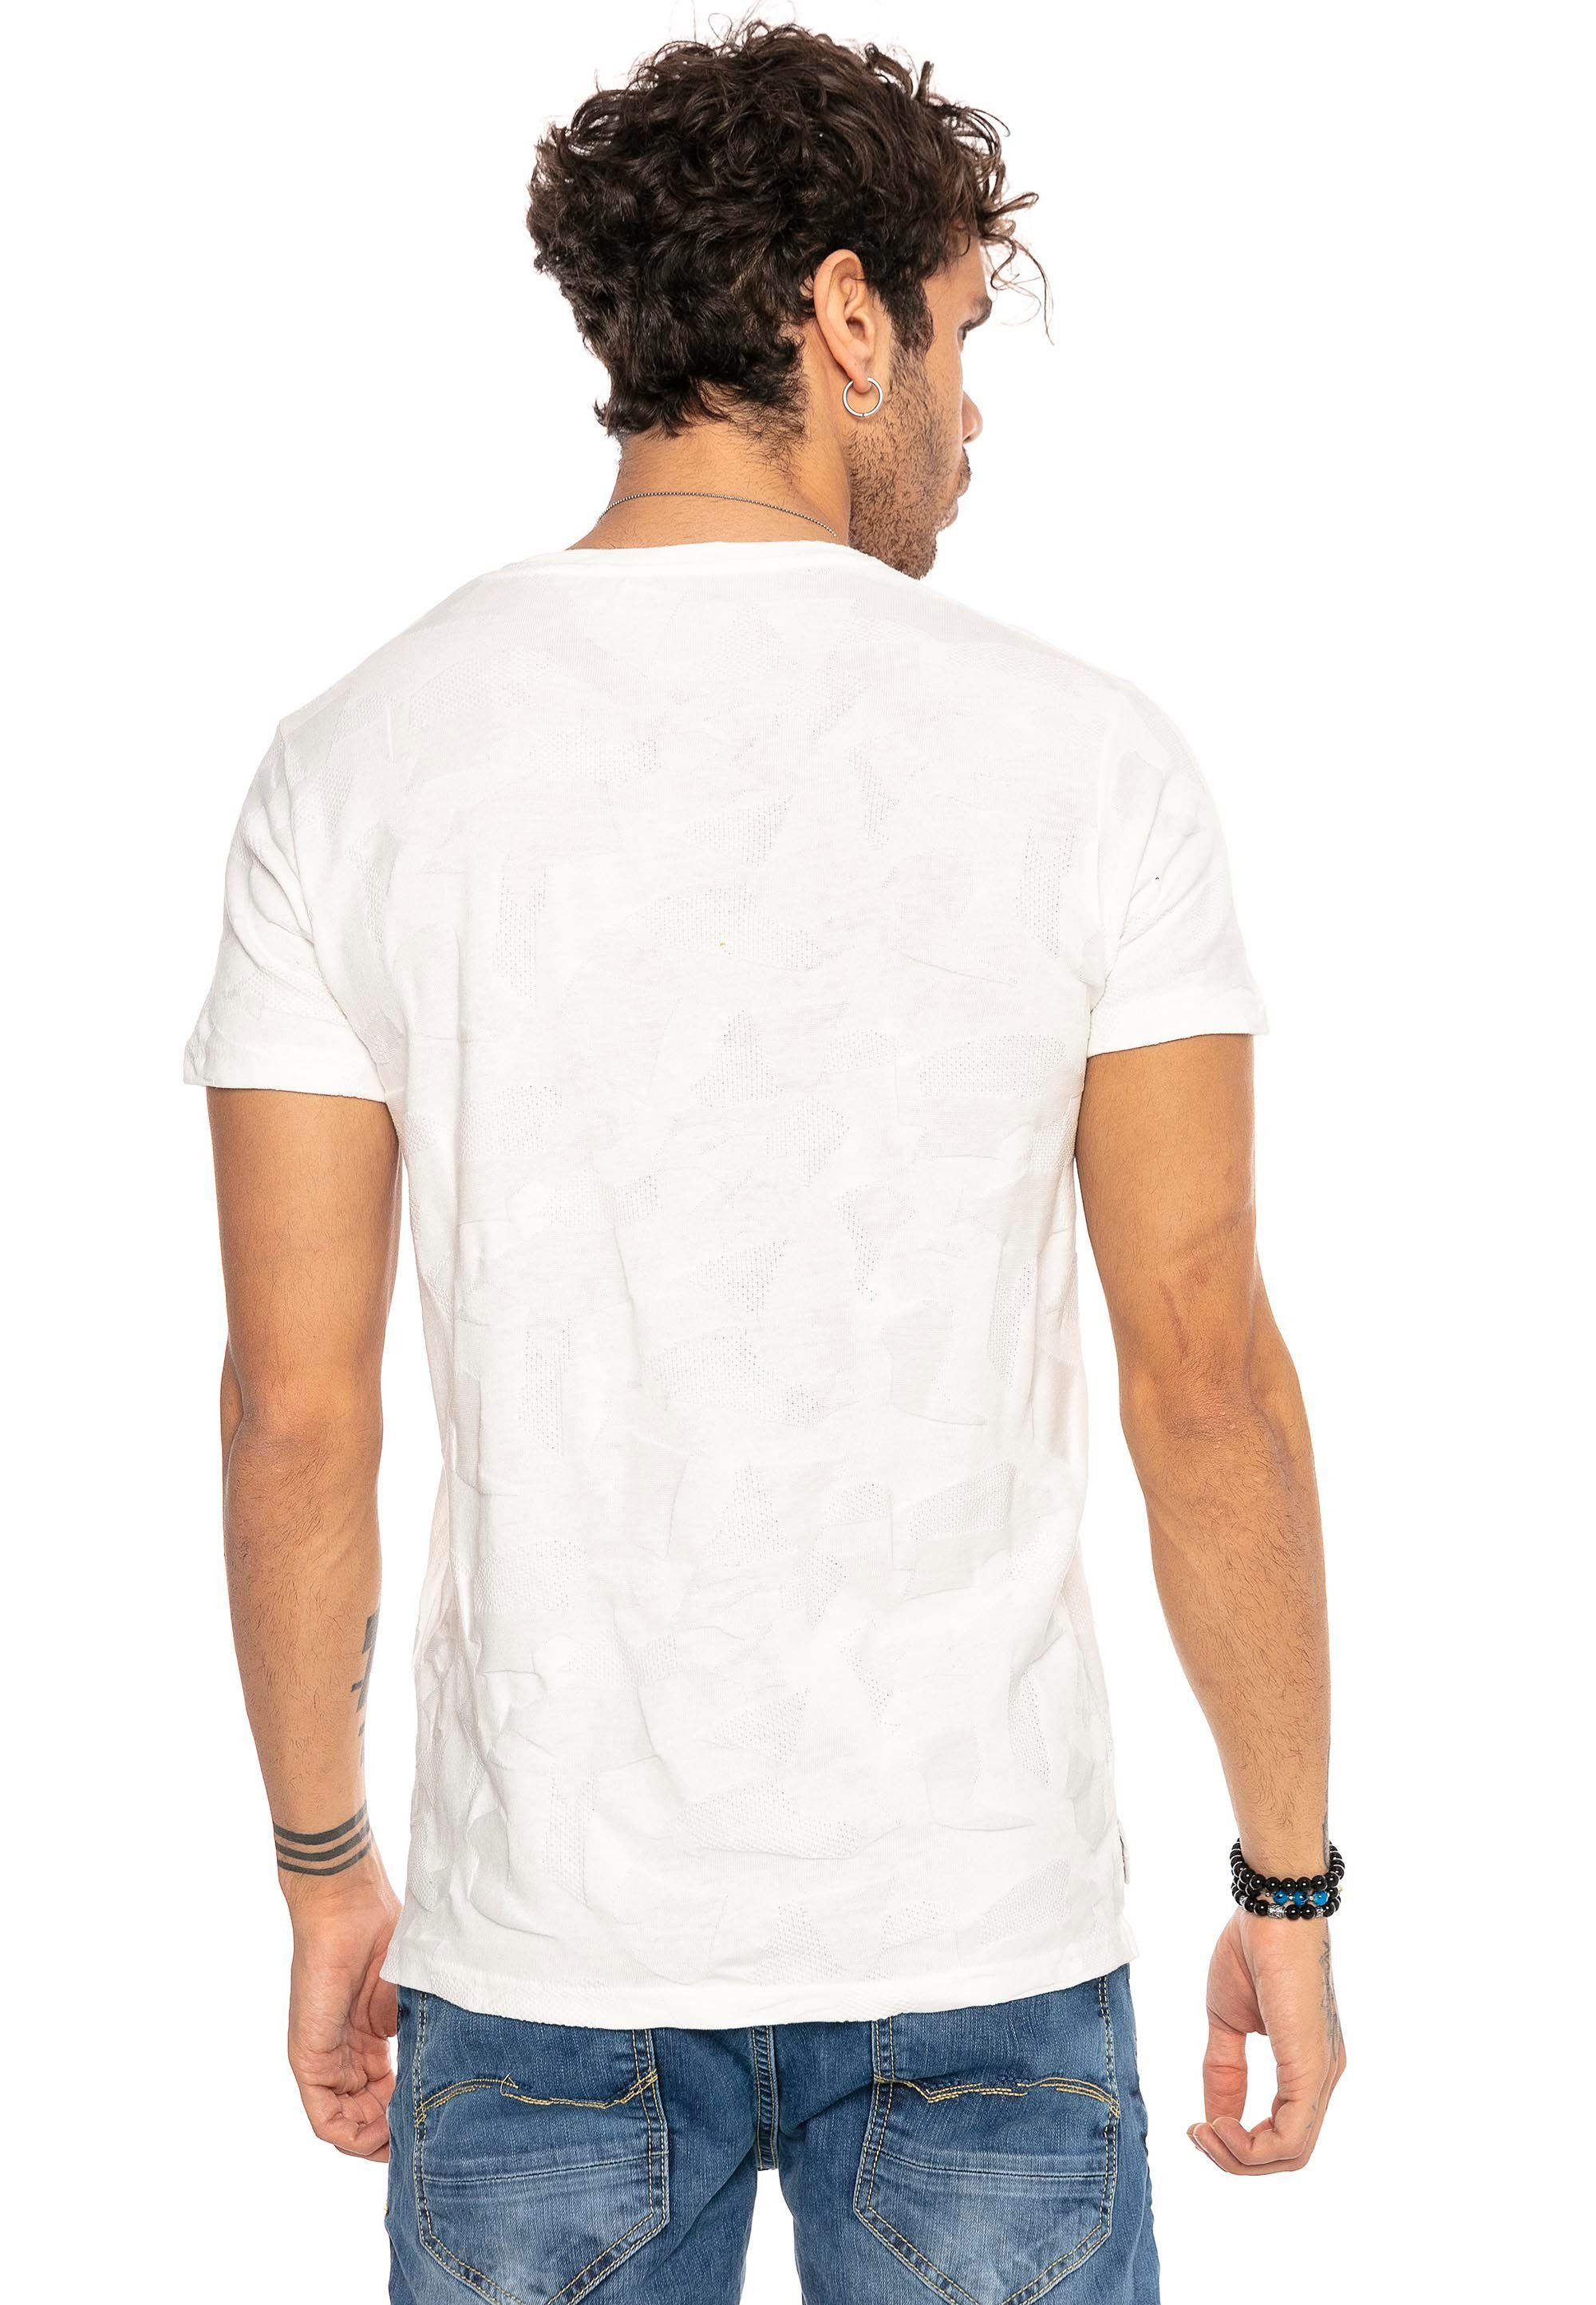 weiß mit Rapids RedBridge innovativem T-Shirt Cedar "Pressed-Pieces"-Design